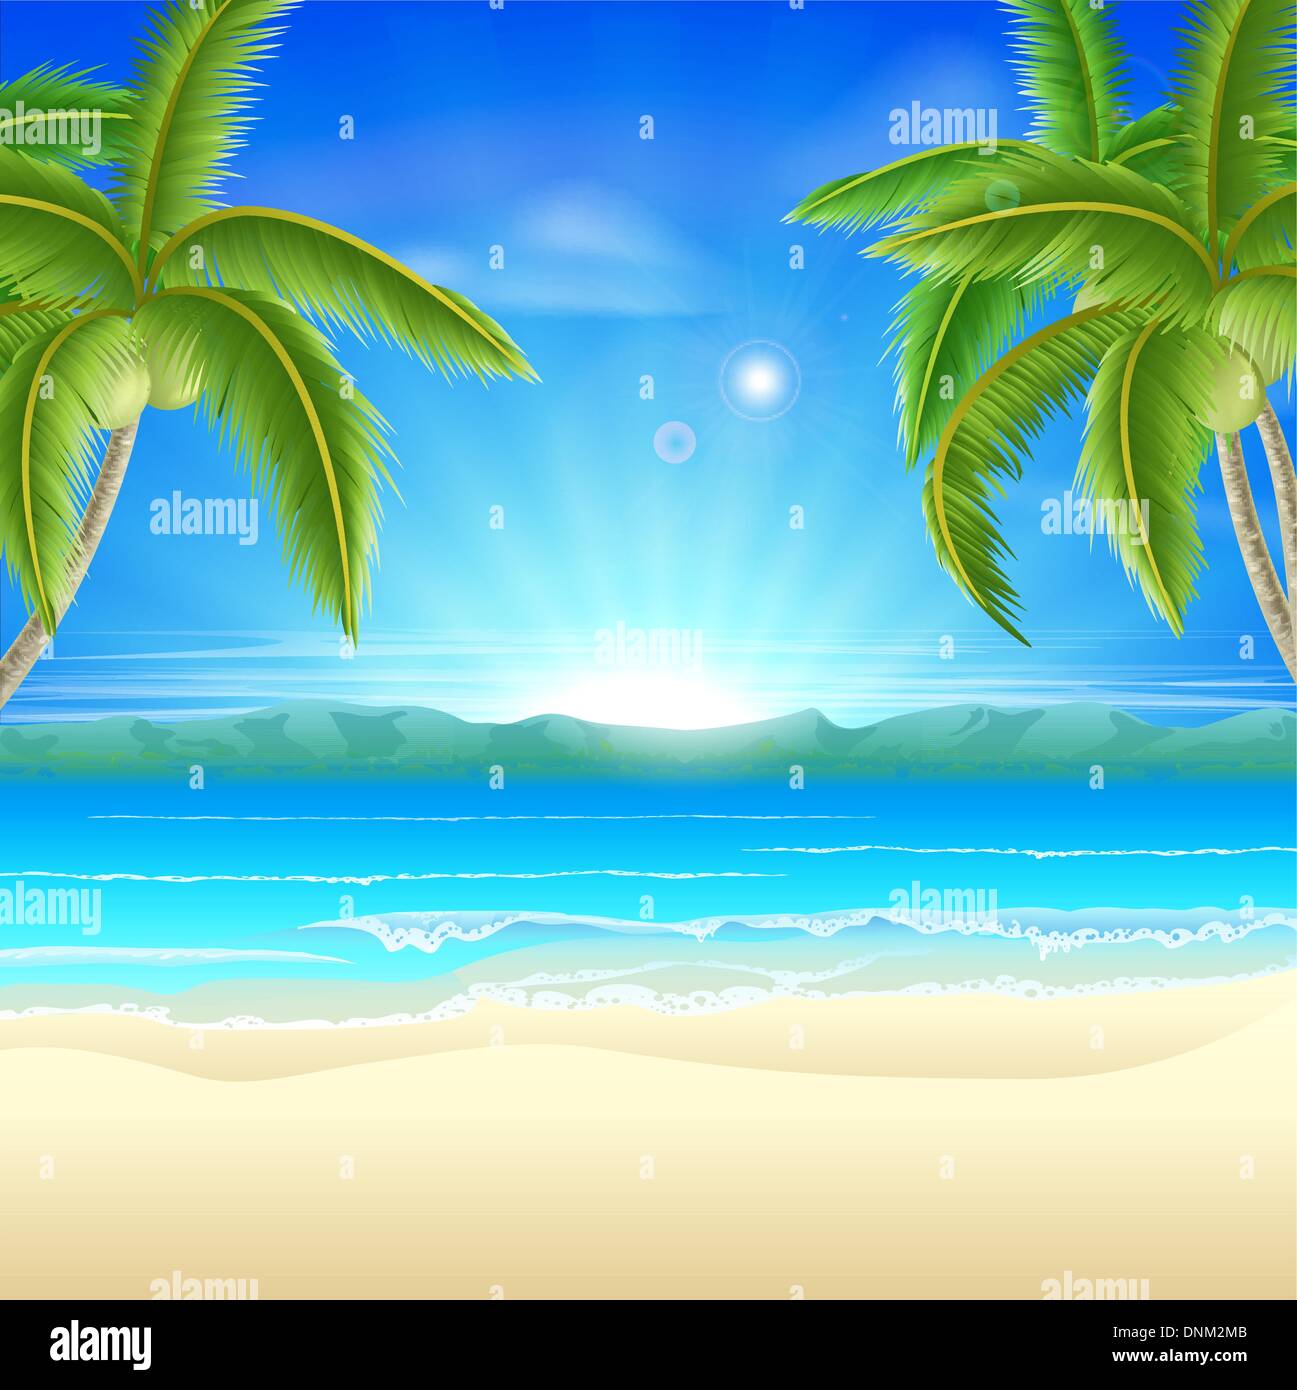 Vacanze Estate Mare sullo sfondo di una bella estate spiaggia sabbiosa con palme di cocco incorniciare l'immagine Illustrazione Vettoriale